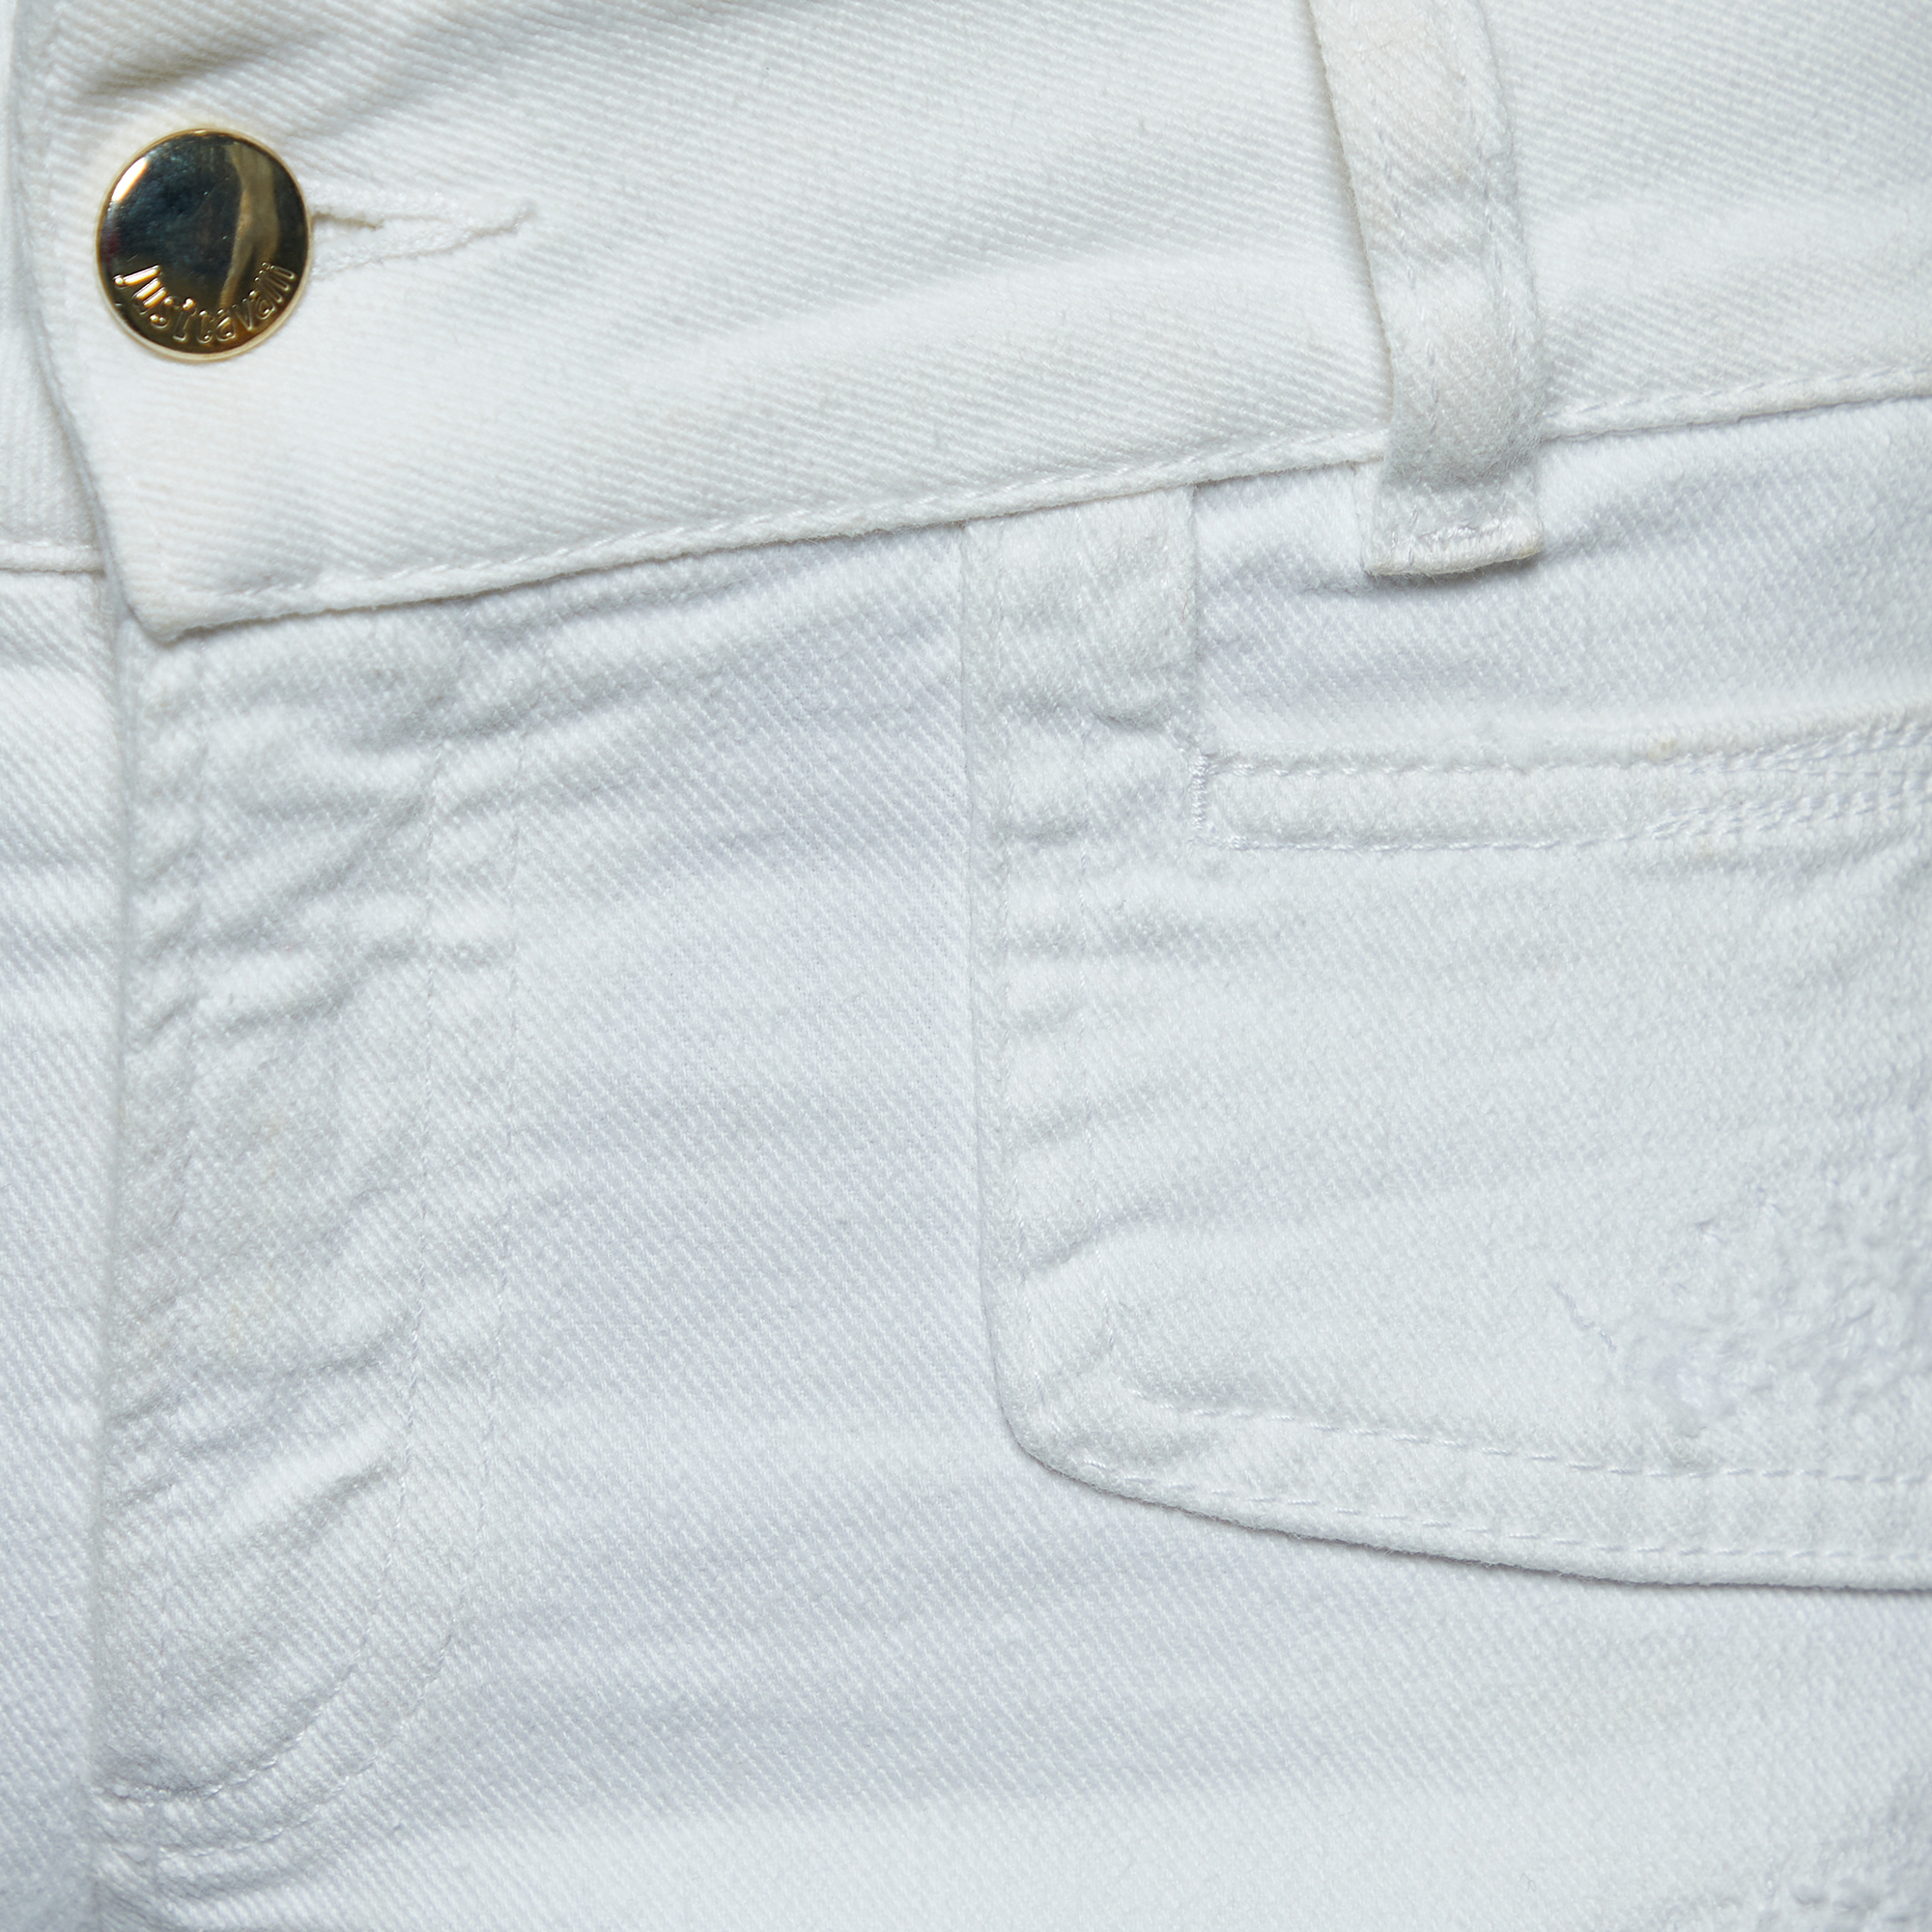 Just Cavalli White Denim Cropped Jeans S Waist 30